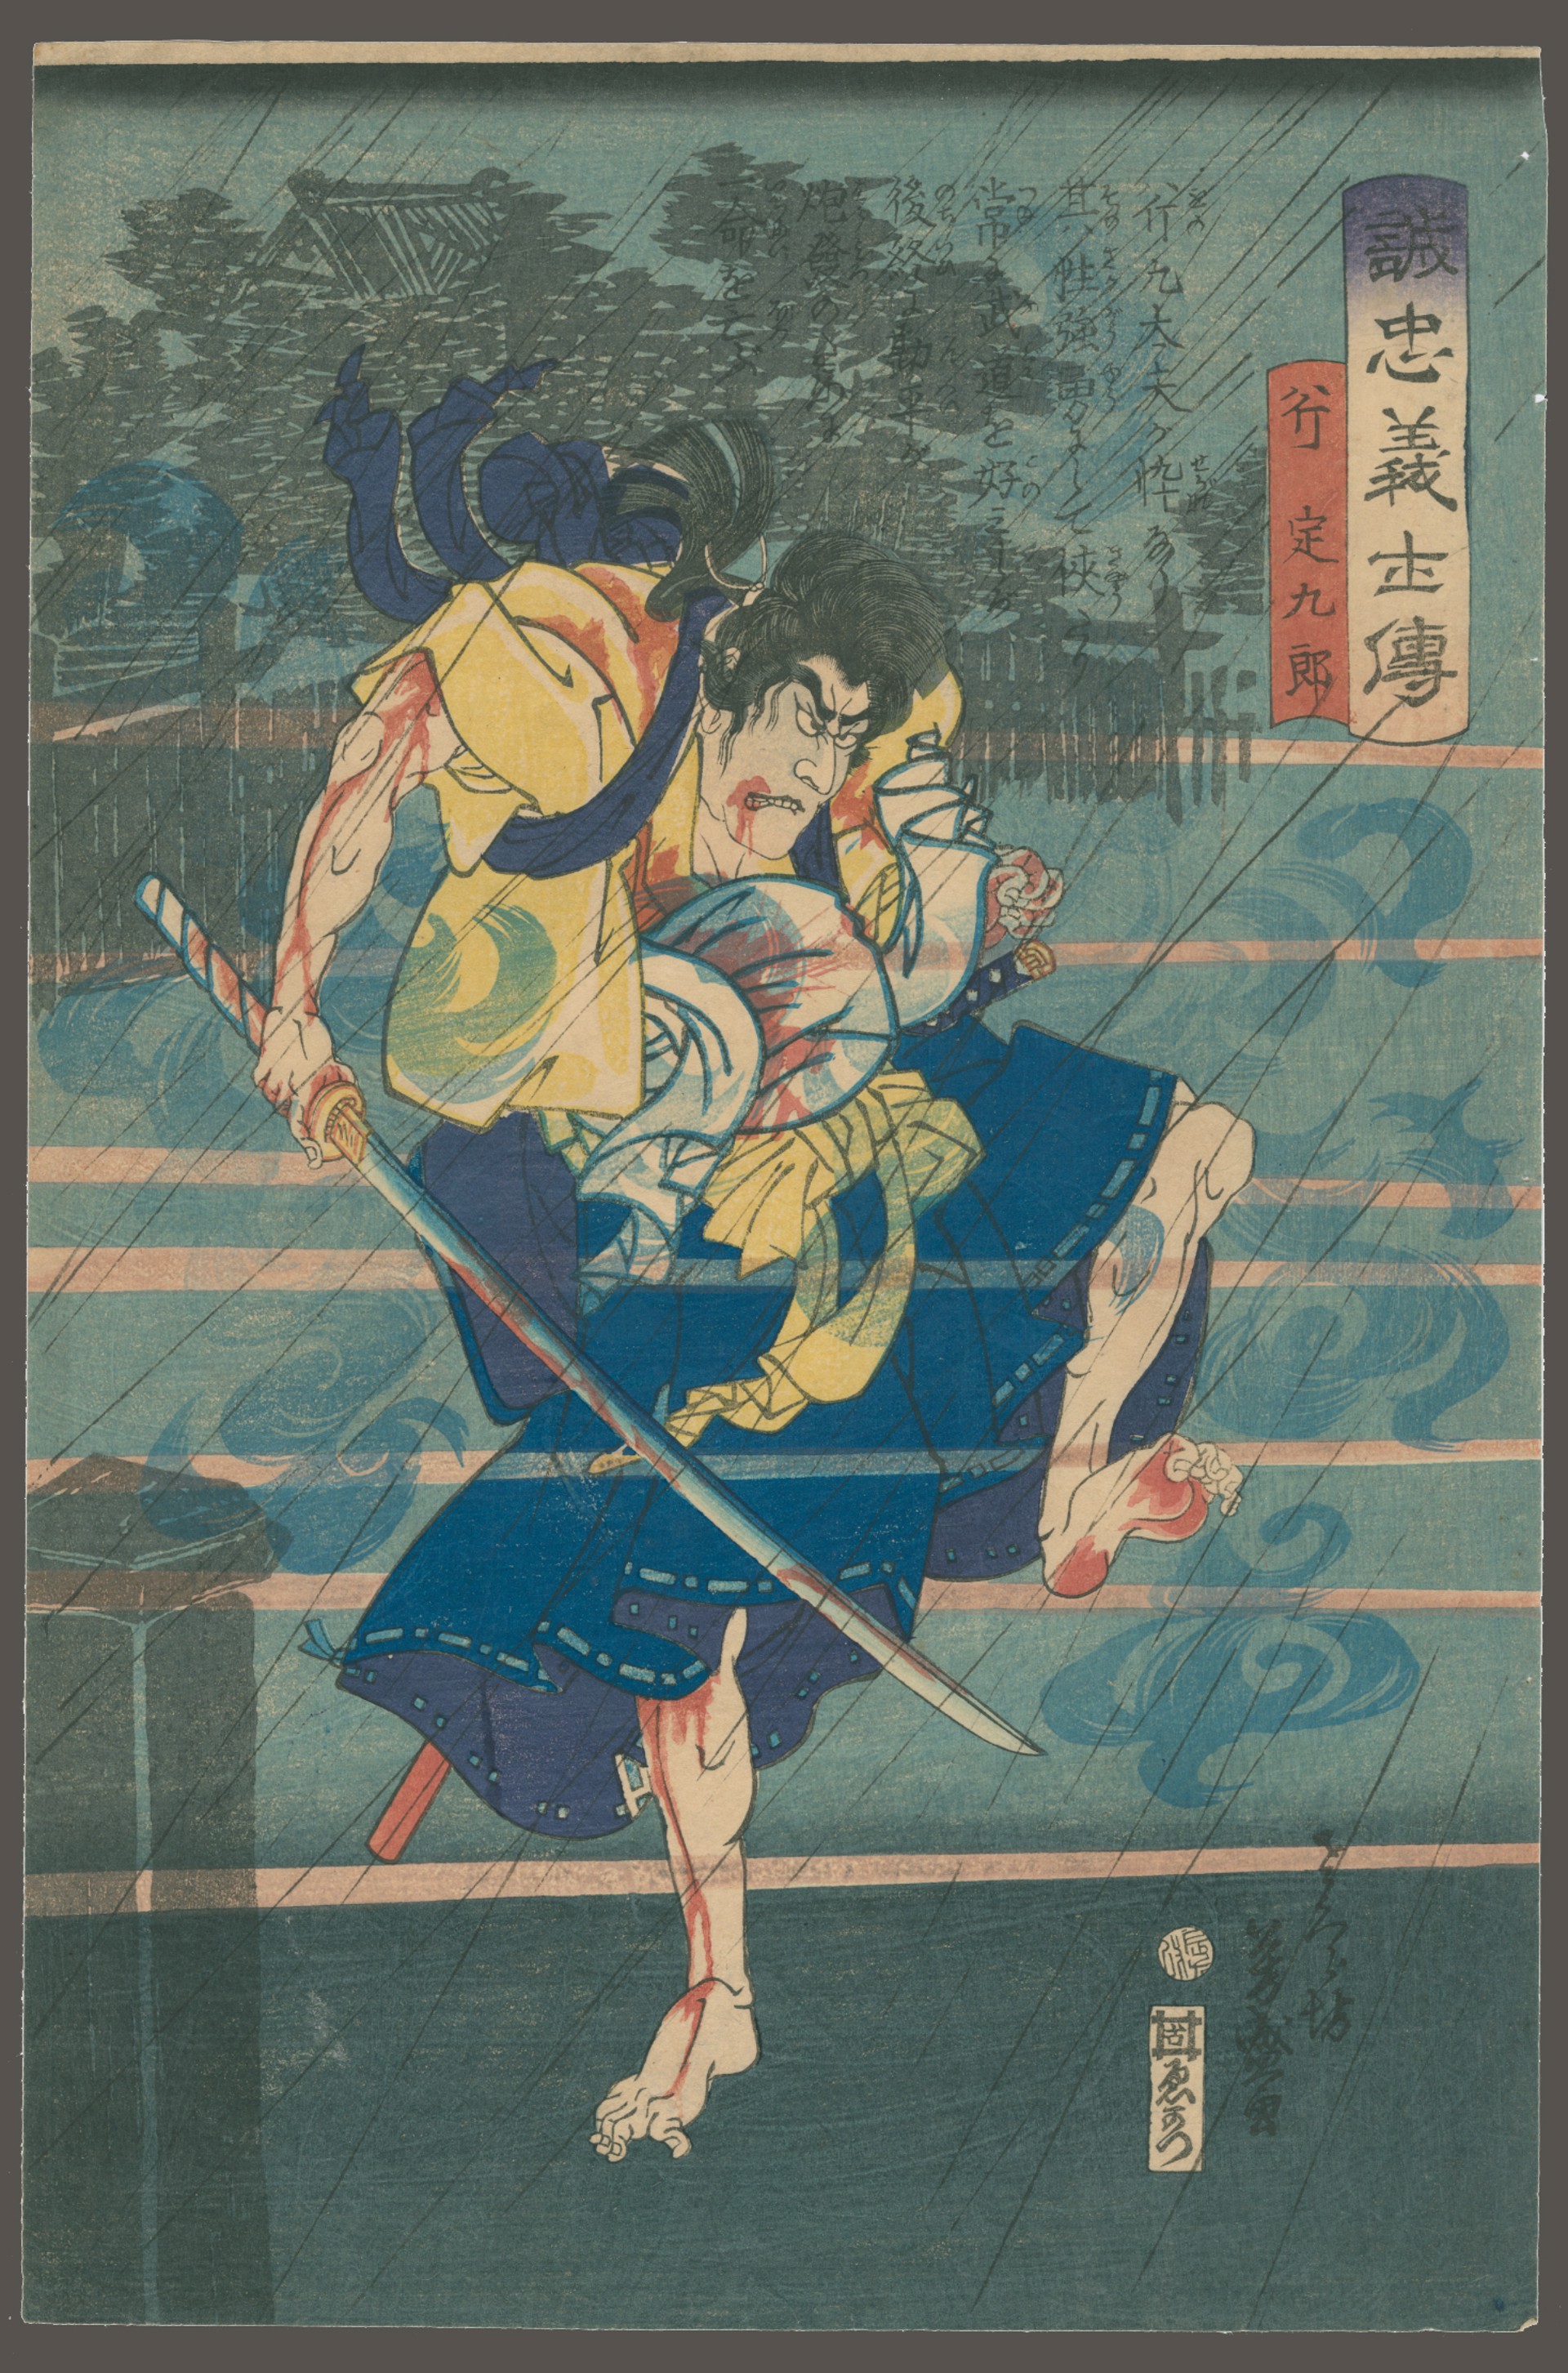 Ono Sadakuro Stories of True Loyalty of the Faithful Samurai by Yoshimori (Kousai)